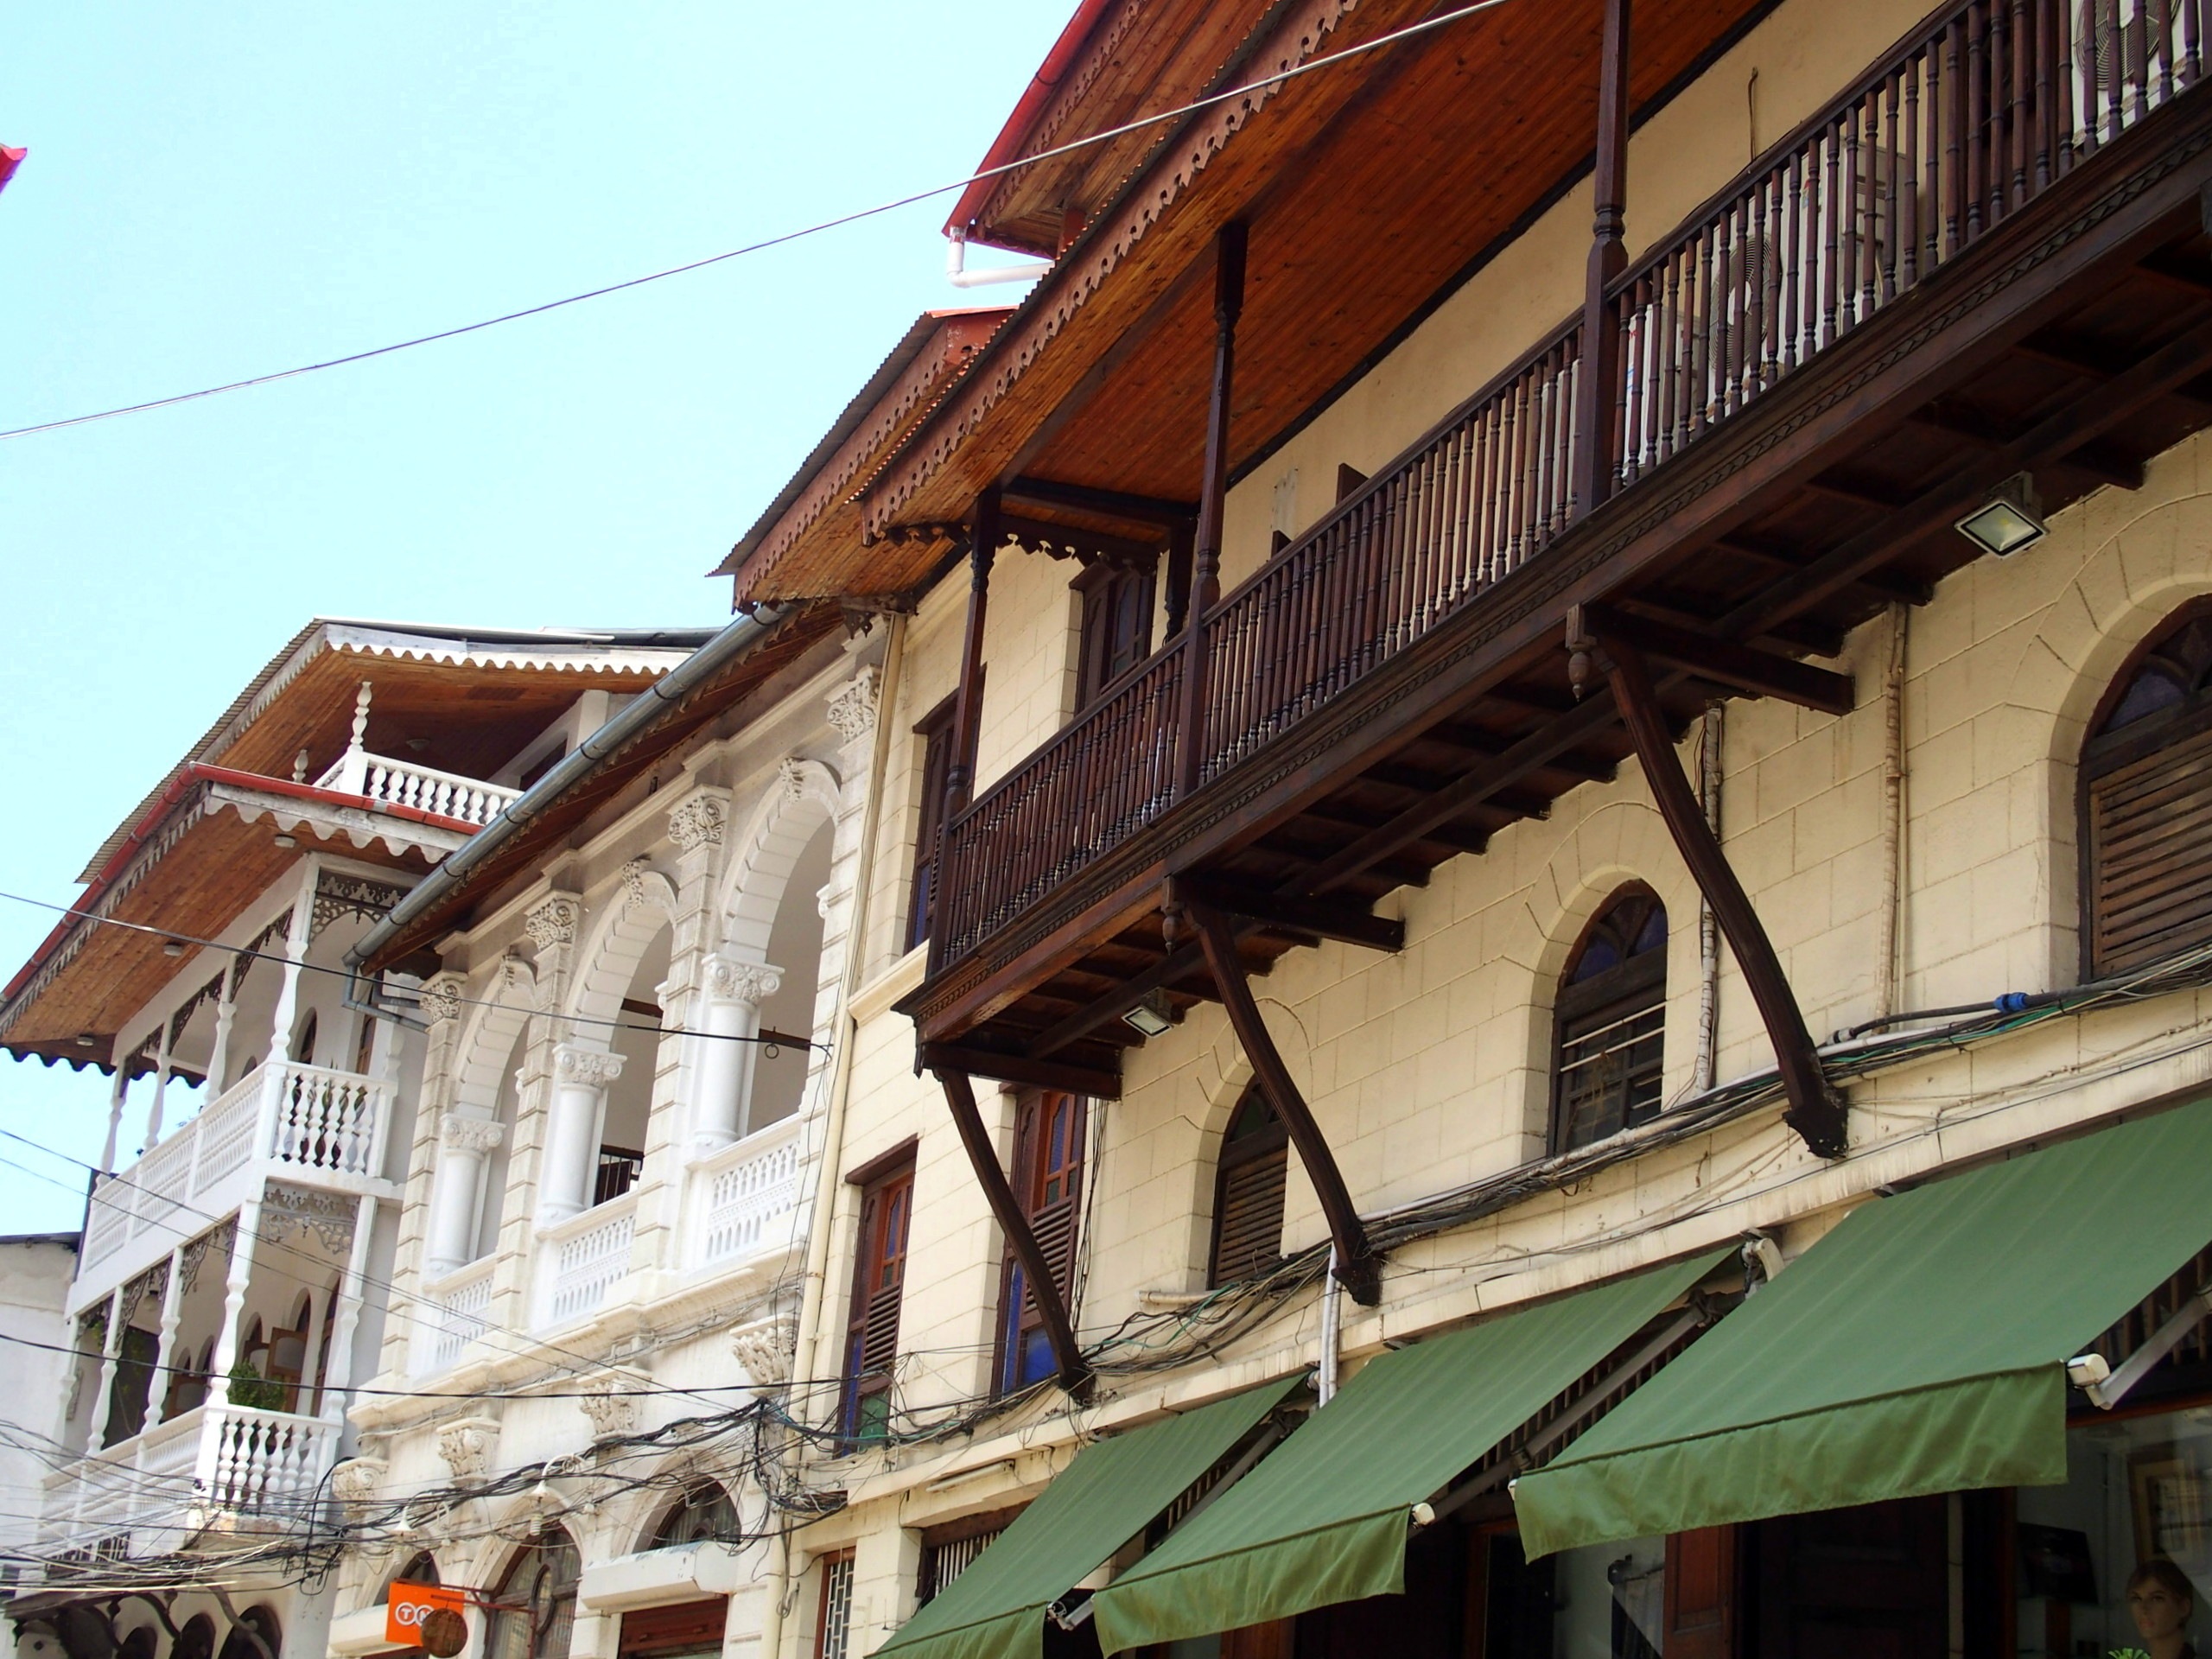 Balcons sculptés sur maisons traditionnelles Stone Town Zanzibar